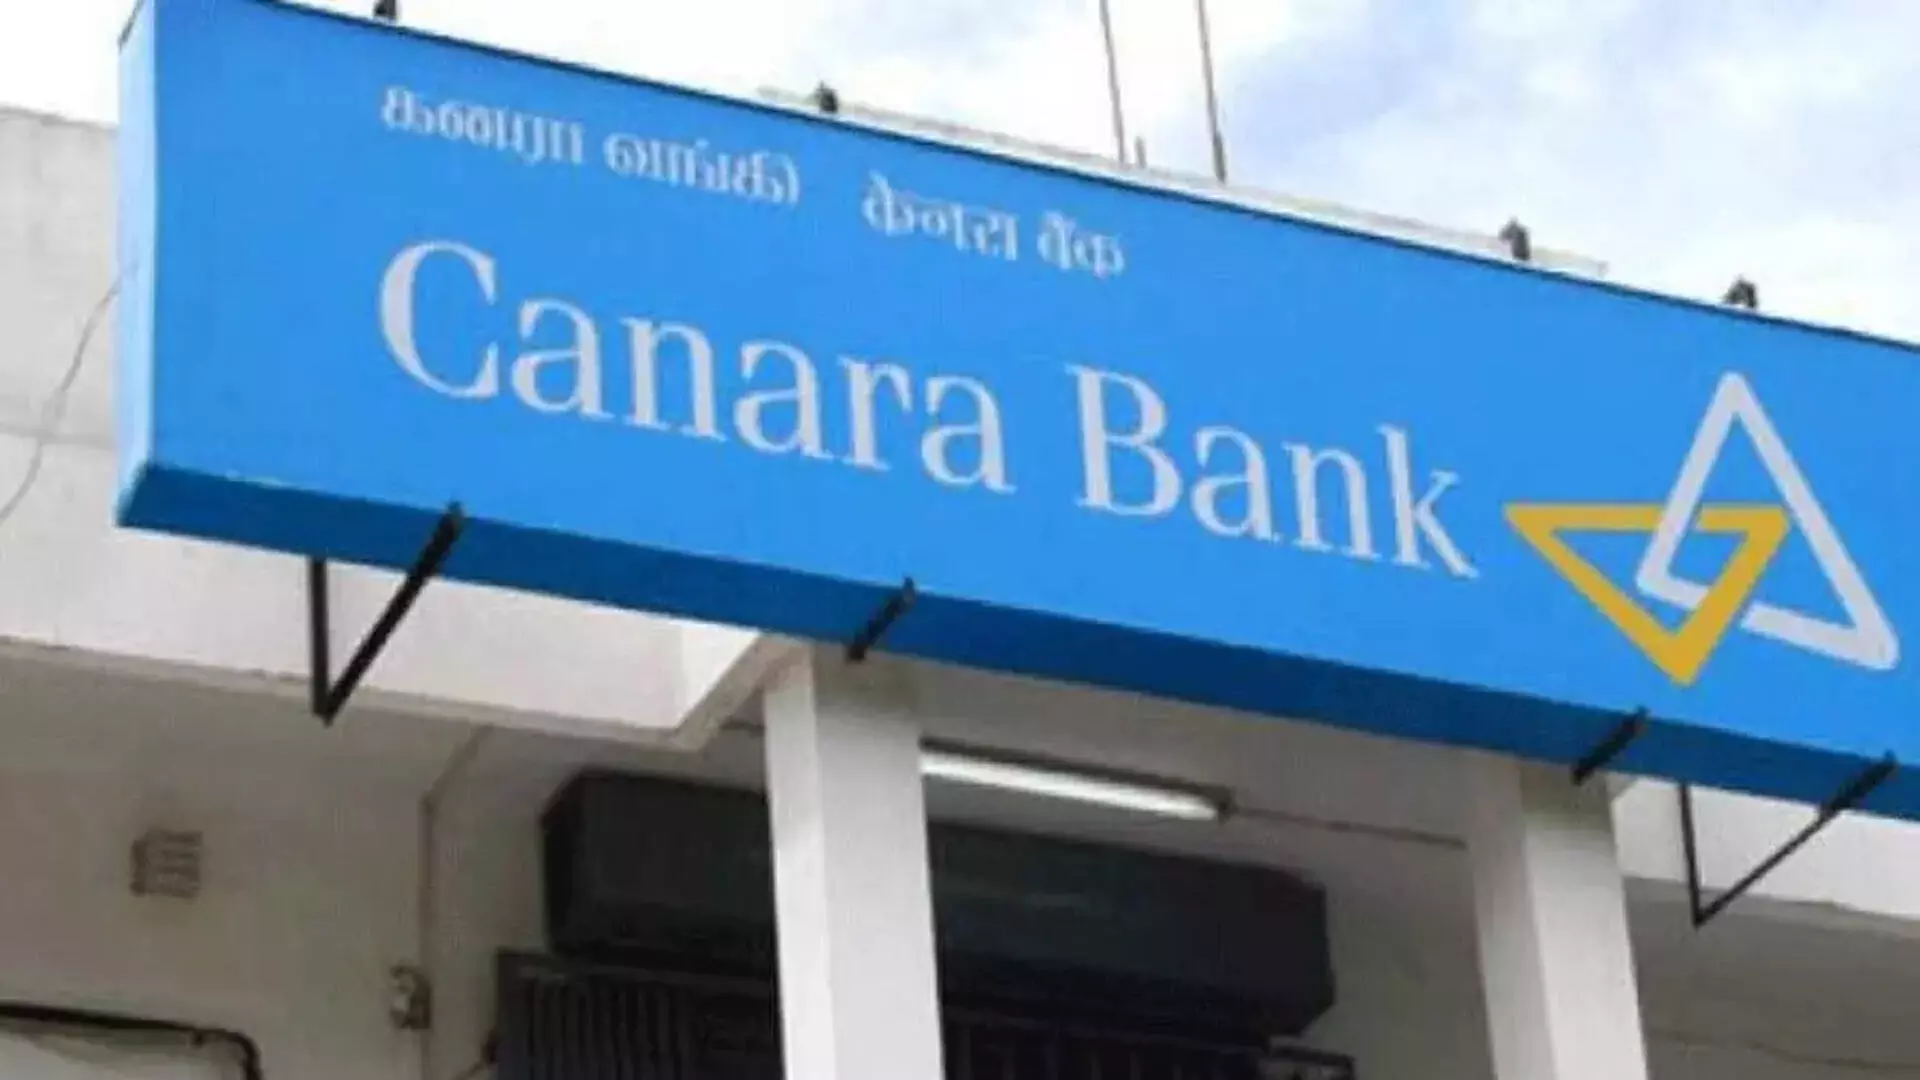 Canara Bank ने पहली तिमाही में शुद्ध लाभ में 10% की वृद्धि दर्ज की